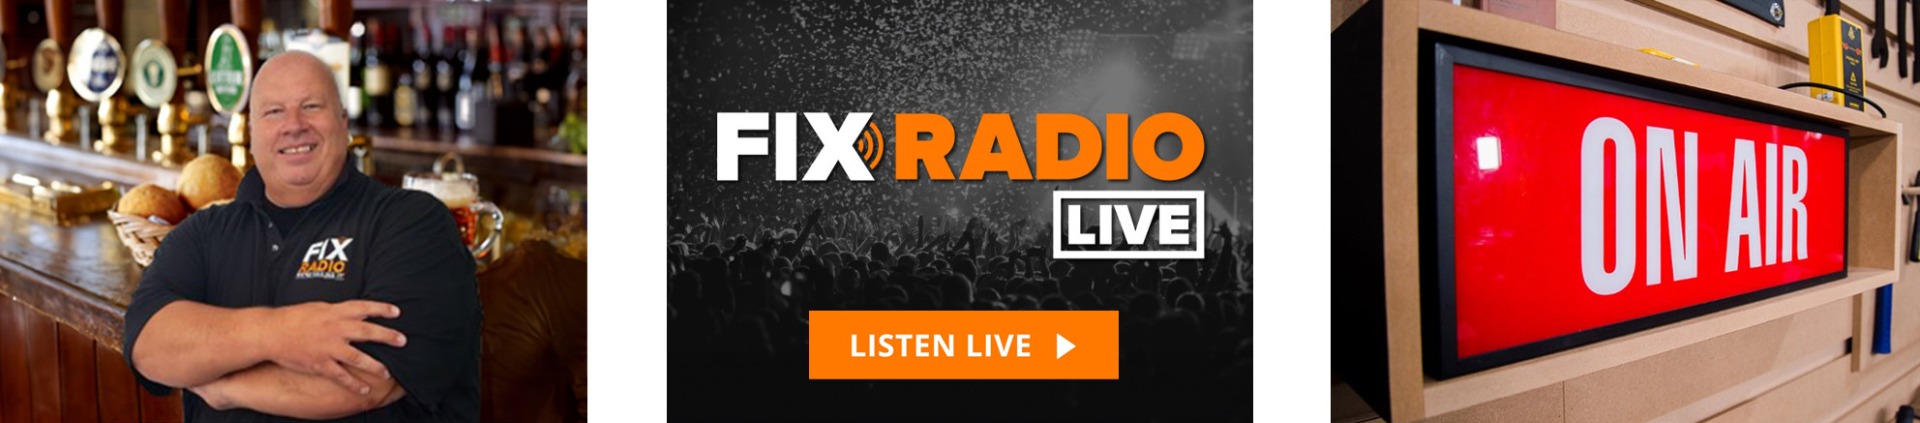 fix-radio-live-button